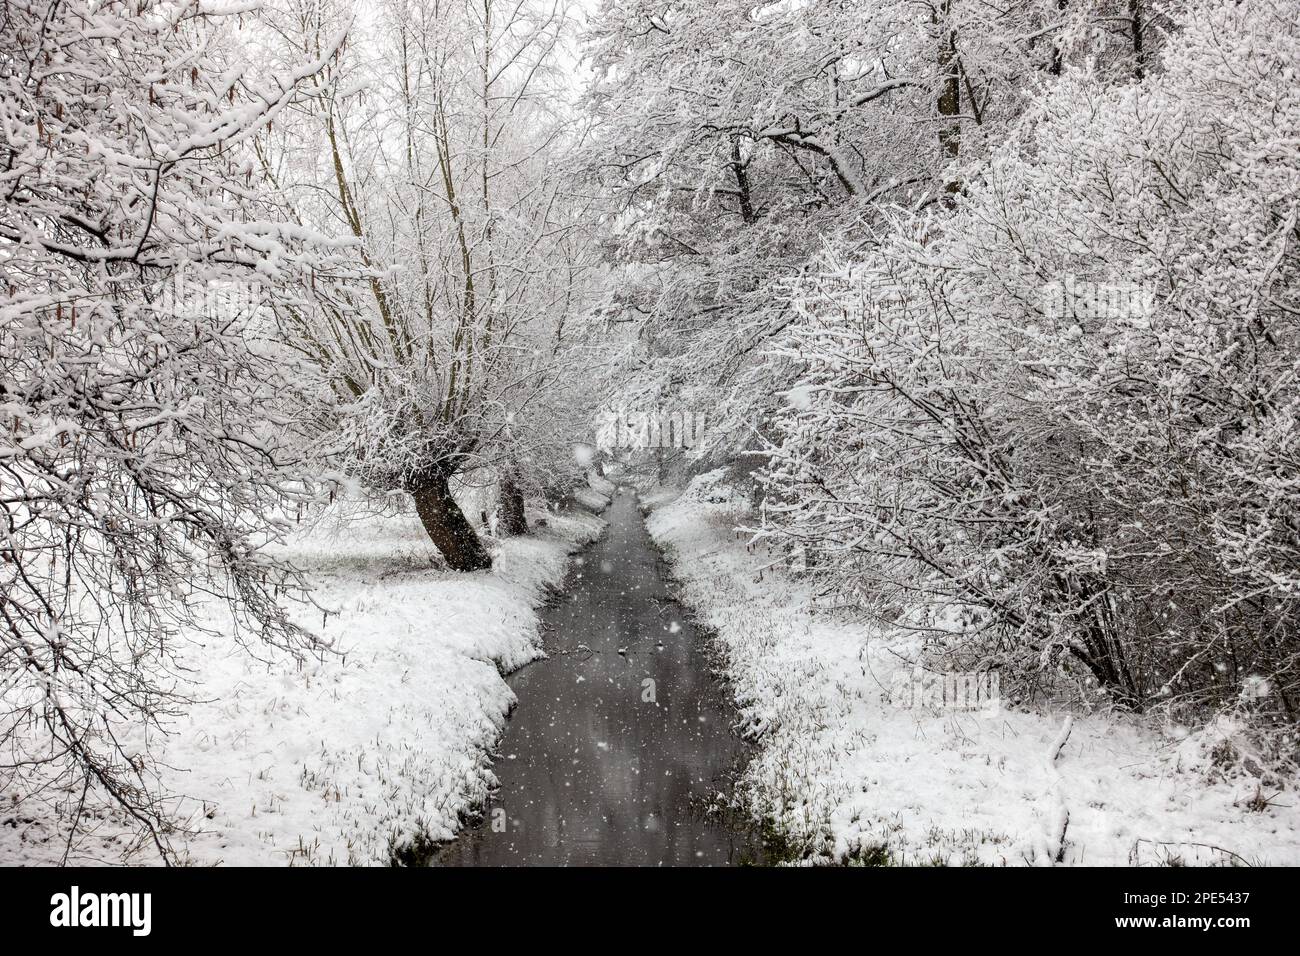 Début de l'hiver à Meerbusch, Rhénanie-du-Nord-Westfalia, Allemagne. Fortes chutes de neige dans une réserve naturelle, Ilvericher Altrheinschlinge près de Düsseldorf. Banque D'Images